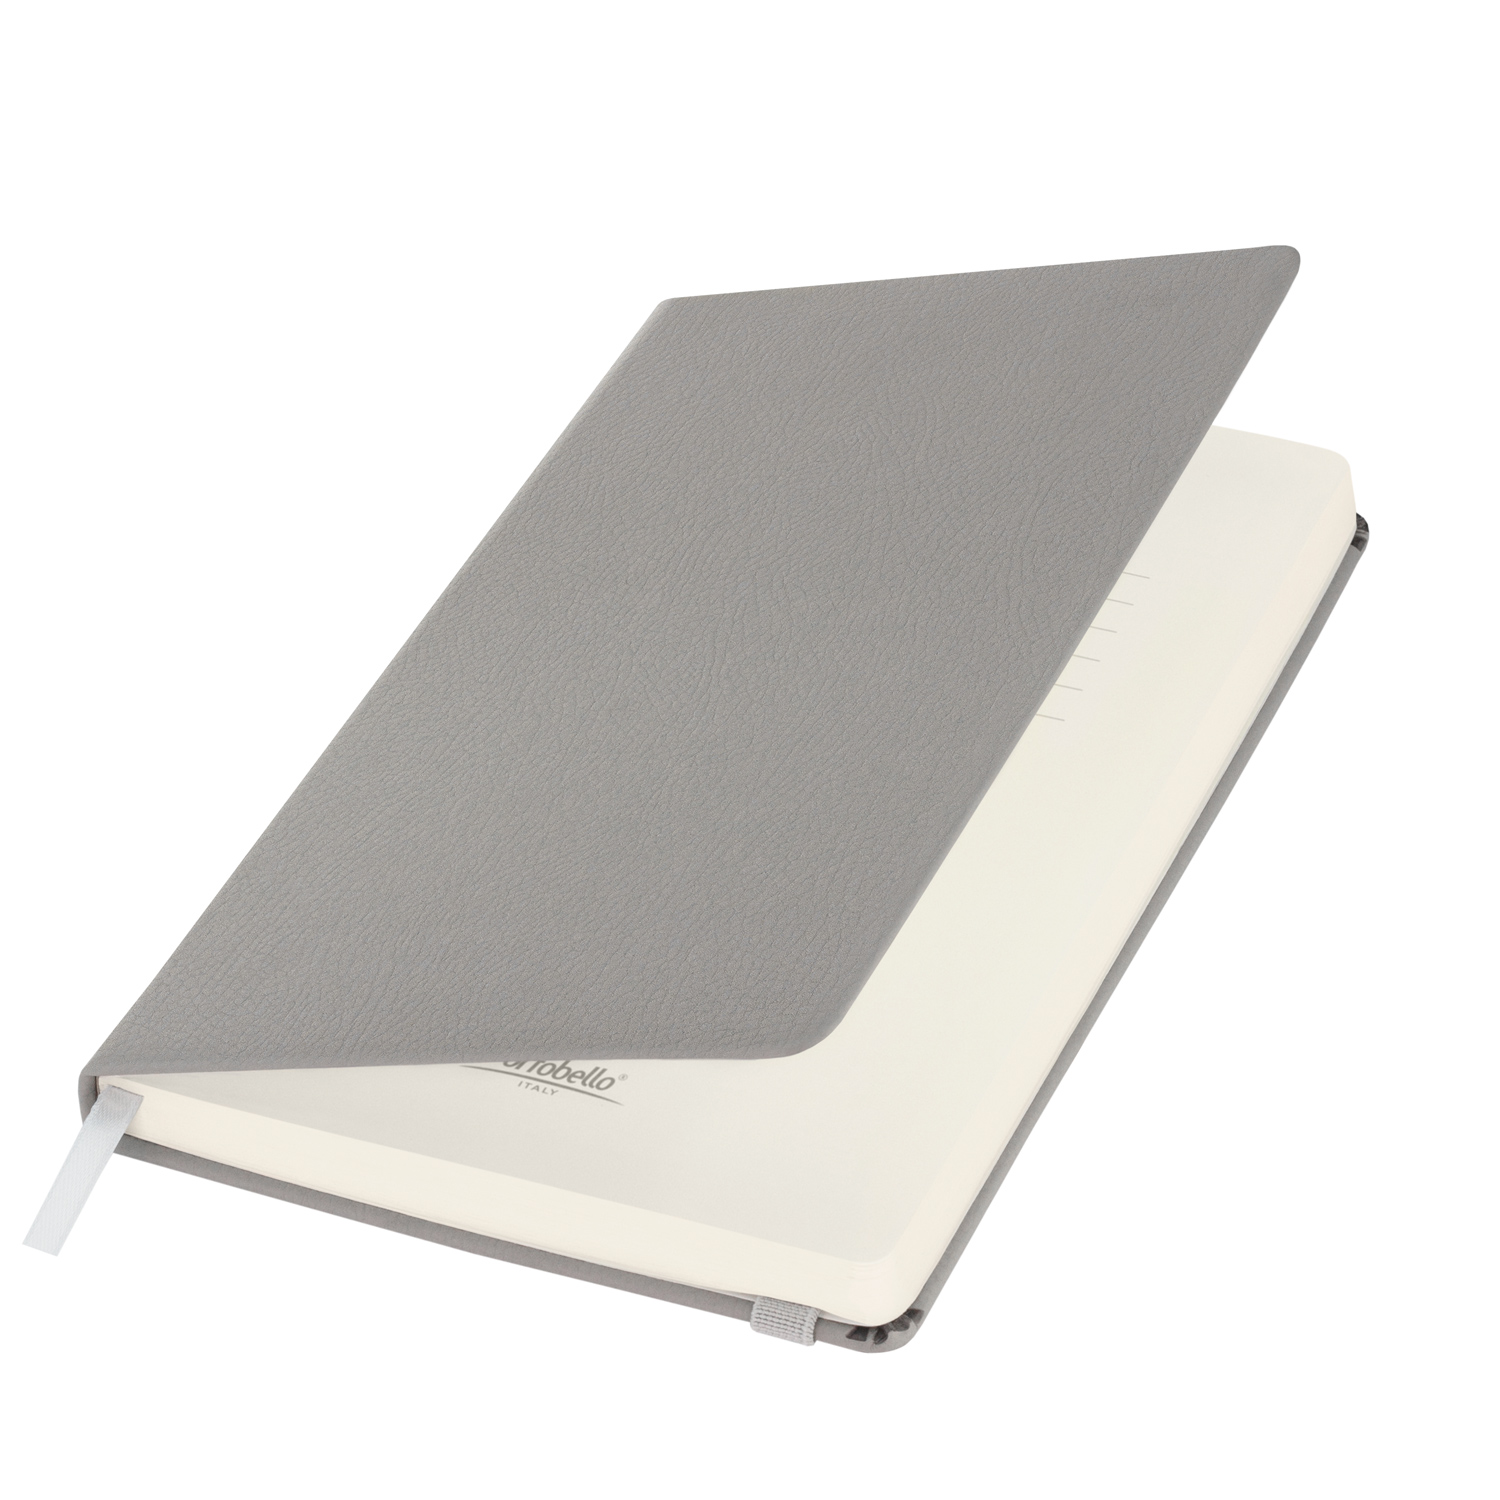 Артикул: A00324.080 — Ежедневник недатированный Marseille soft touch BtoBook, серый (без упаковки, без стикера)